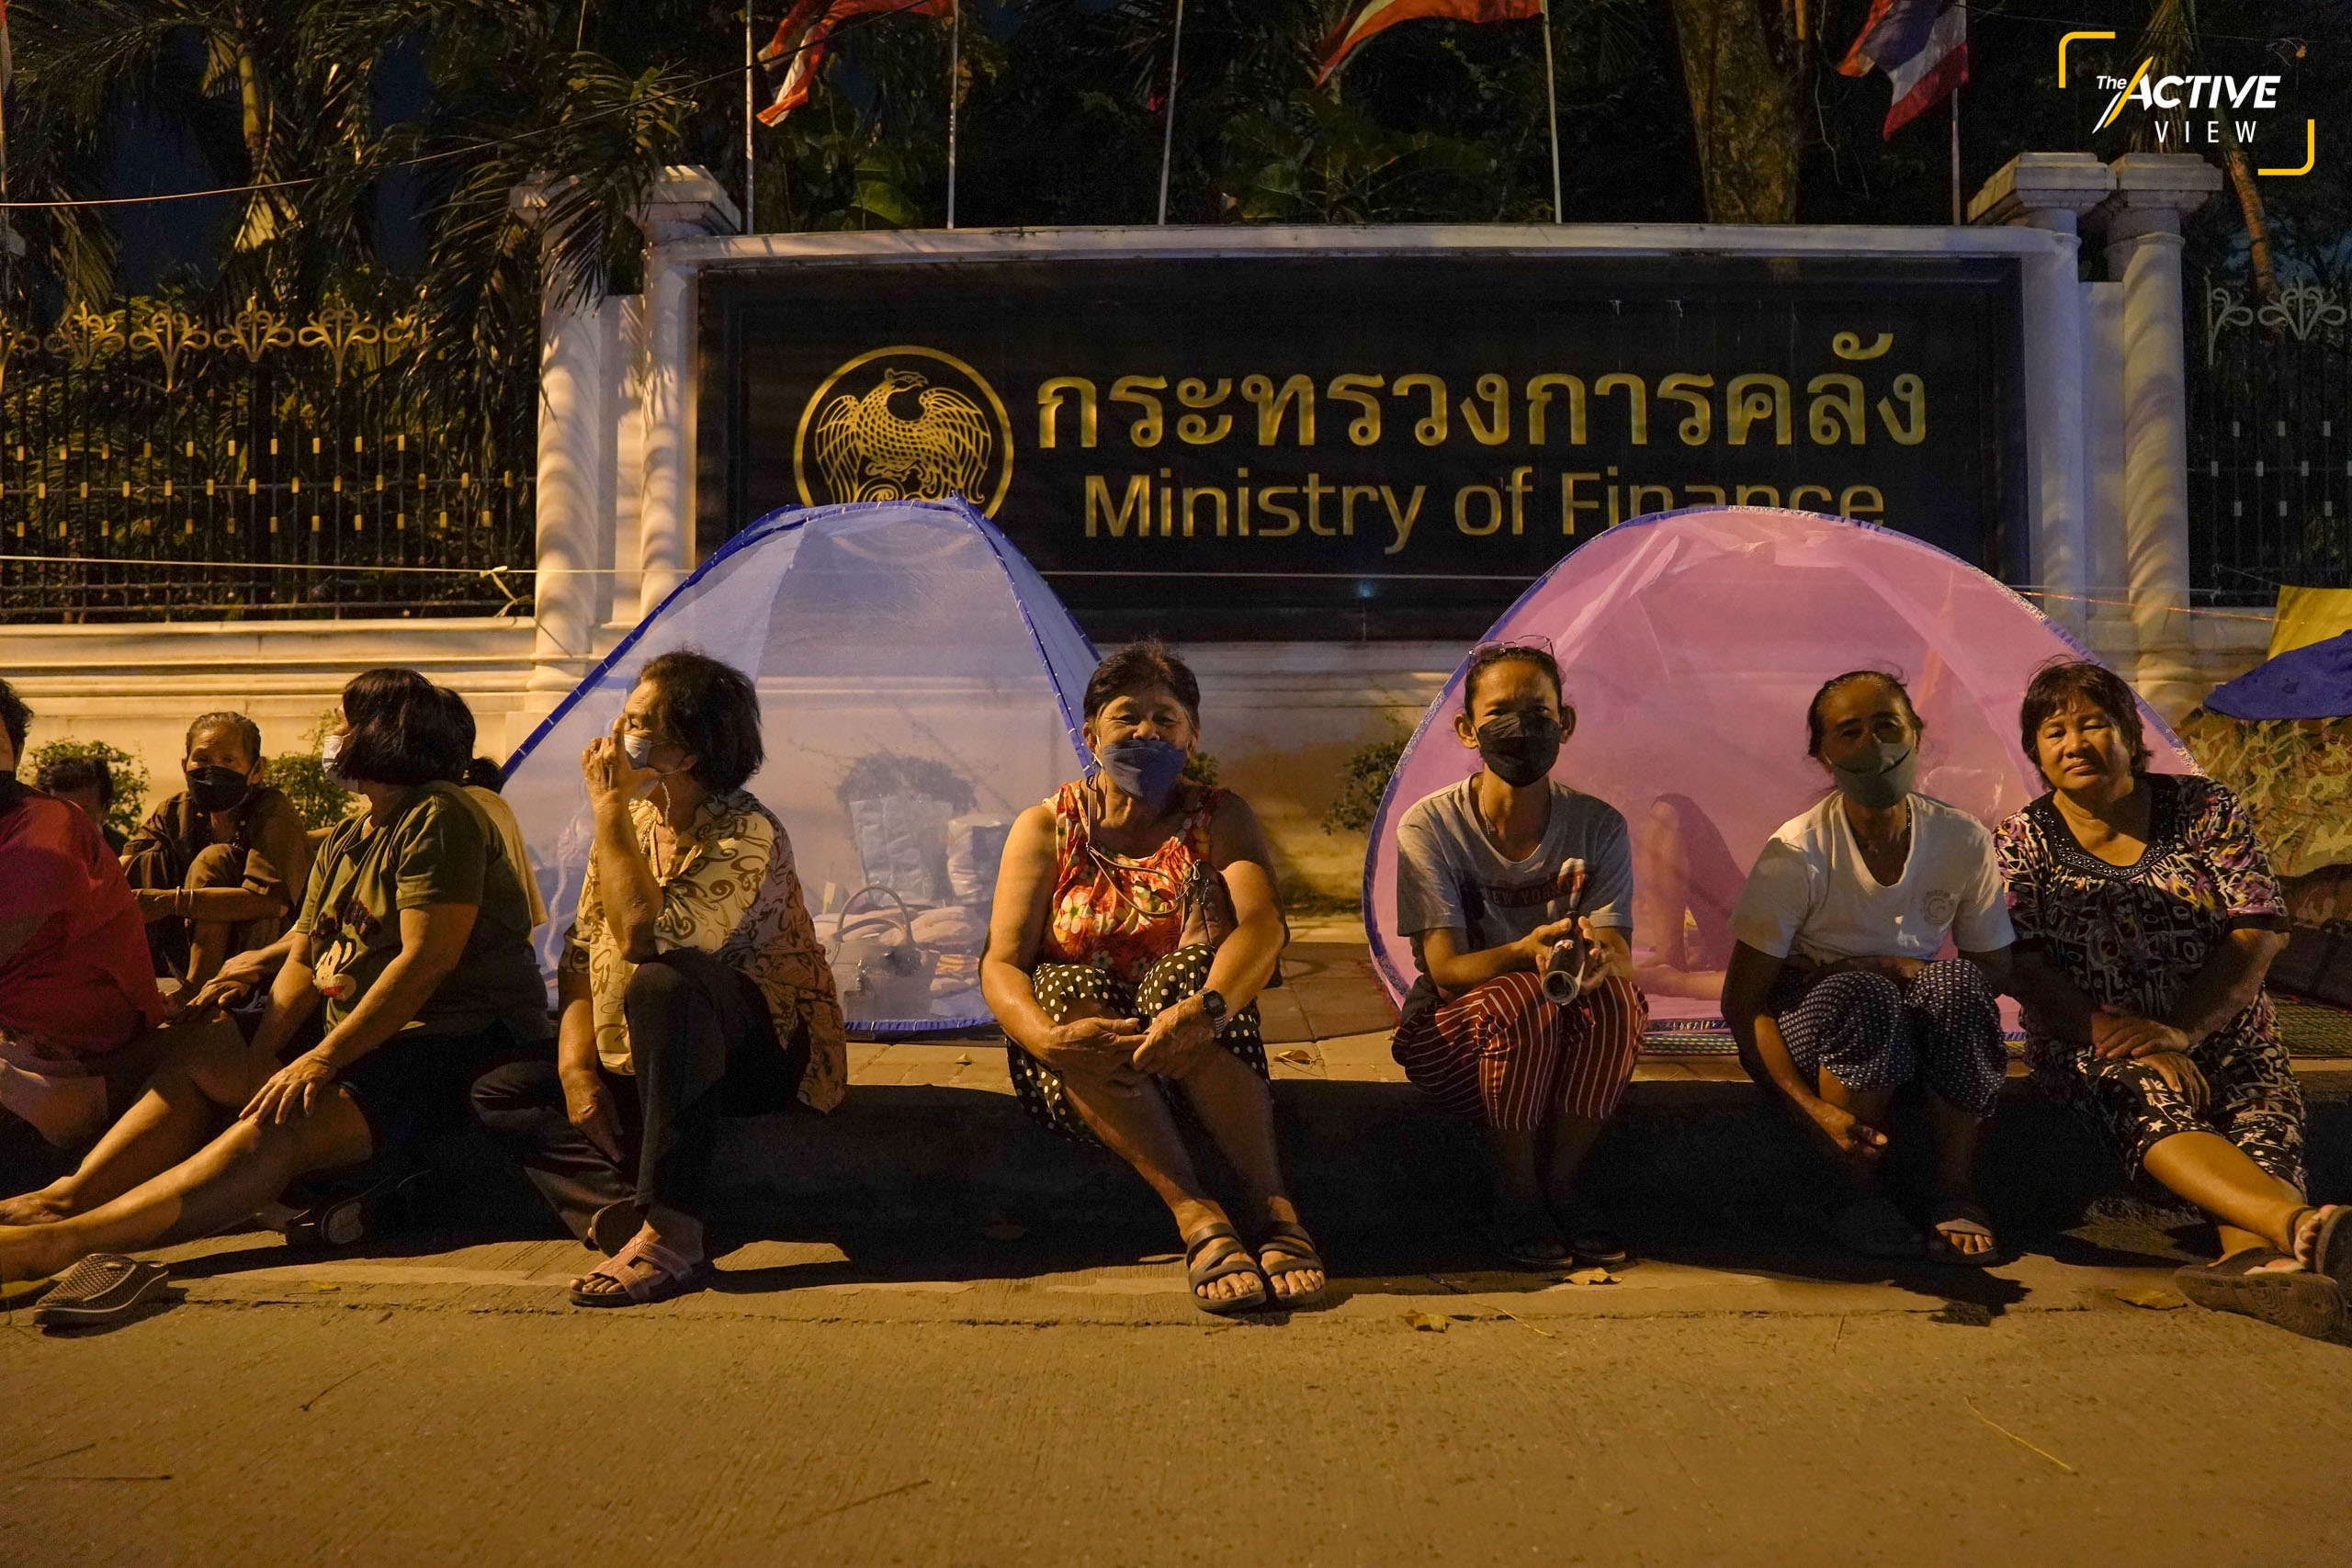 ไม่ห่างจากการชุมนุมของกลุ่มพีมูฟมากนัก จากถนนพิษณุโลก เราเดินทางไปต่อที่ กระทรวงการคลัง บนถนนเส้นพระราม 6
.
ชาวนาที่รวมตัวกันในชื่อ “เครือข่ายหนี้สินชาวนาแห่งประเทศไทย” ก็ยังคงเรียกร้องการแก้ไขปัญหานานนับสัปดาห์แล้วเช่นกัน
.
พวกเขาเรียกร้อง ให้ ครม. มีมติช่วยจัดการหนี้สินของเกษตรกร ผ่านกองทุนฟื้นฟูและพัฒนาเกษตรกร